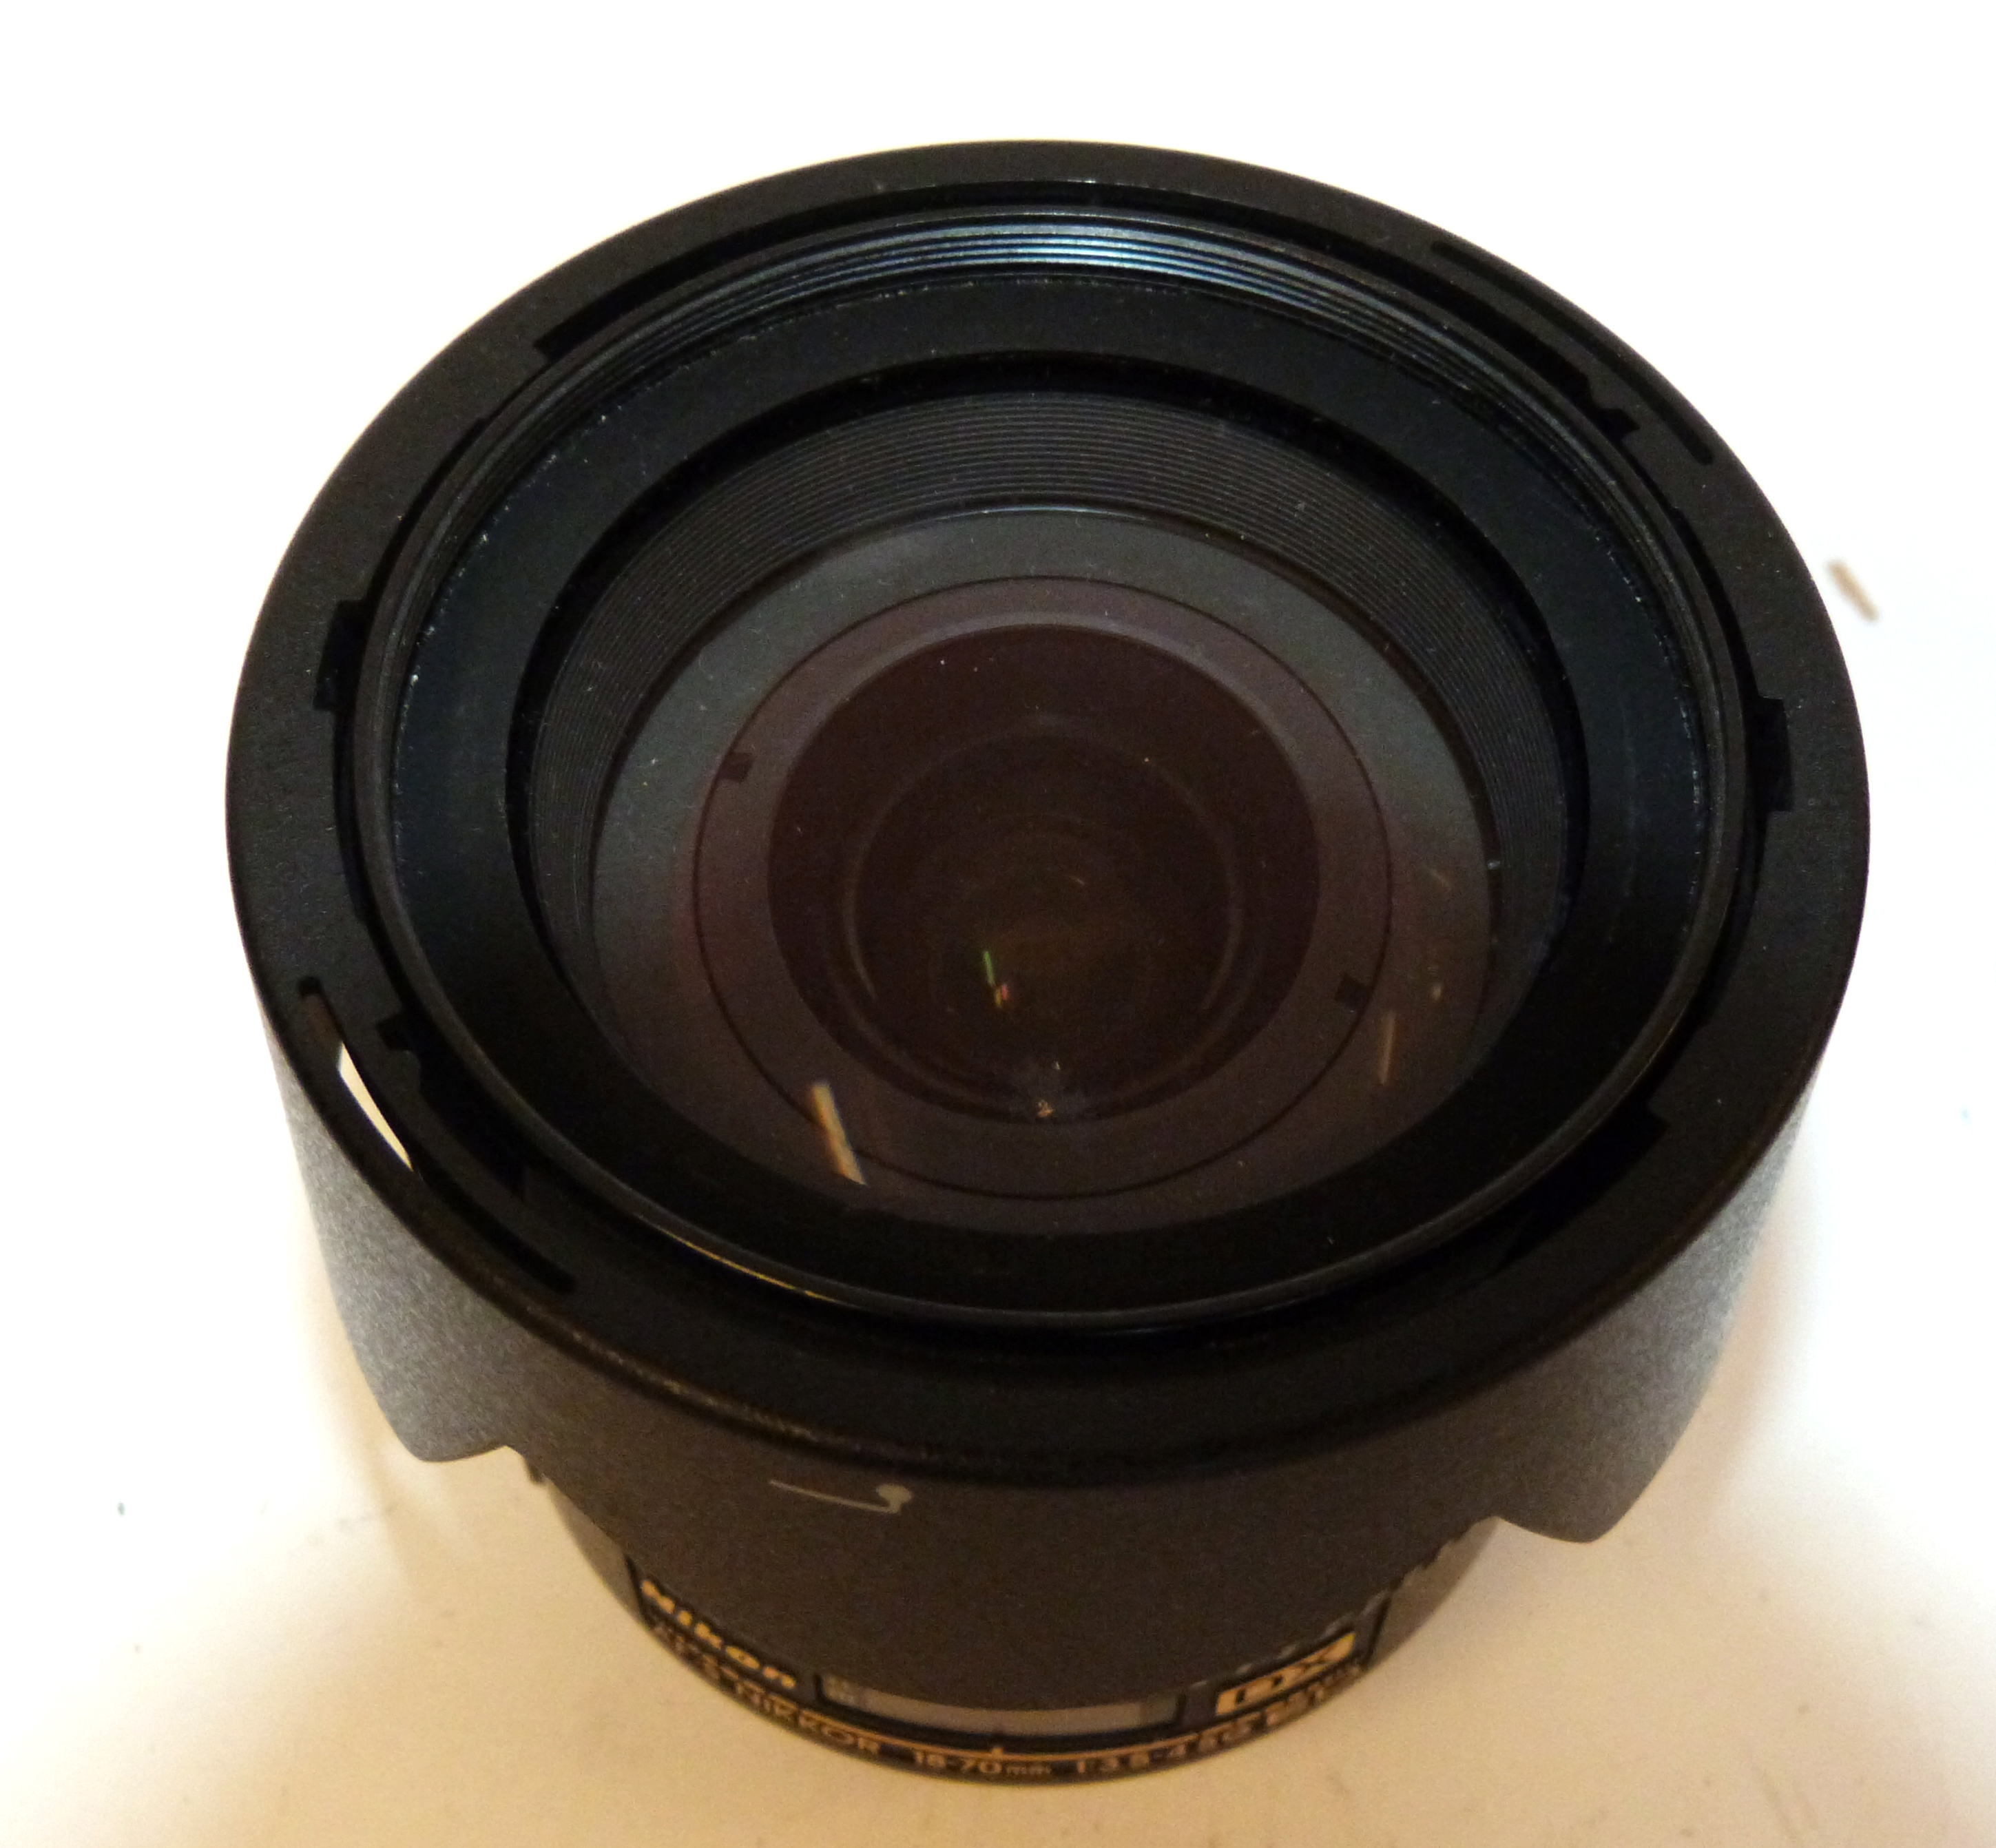 Nikon D70 digital camera together with Nikon AF-S Nikkor 18-70mm lens, charger and fitted case - Image 6 of 6